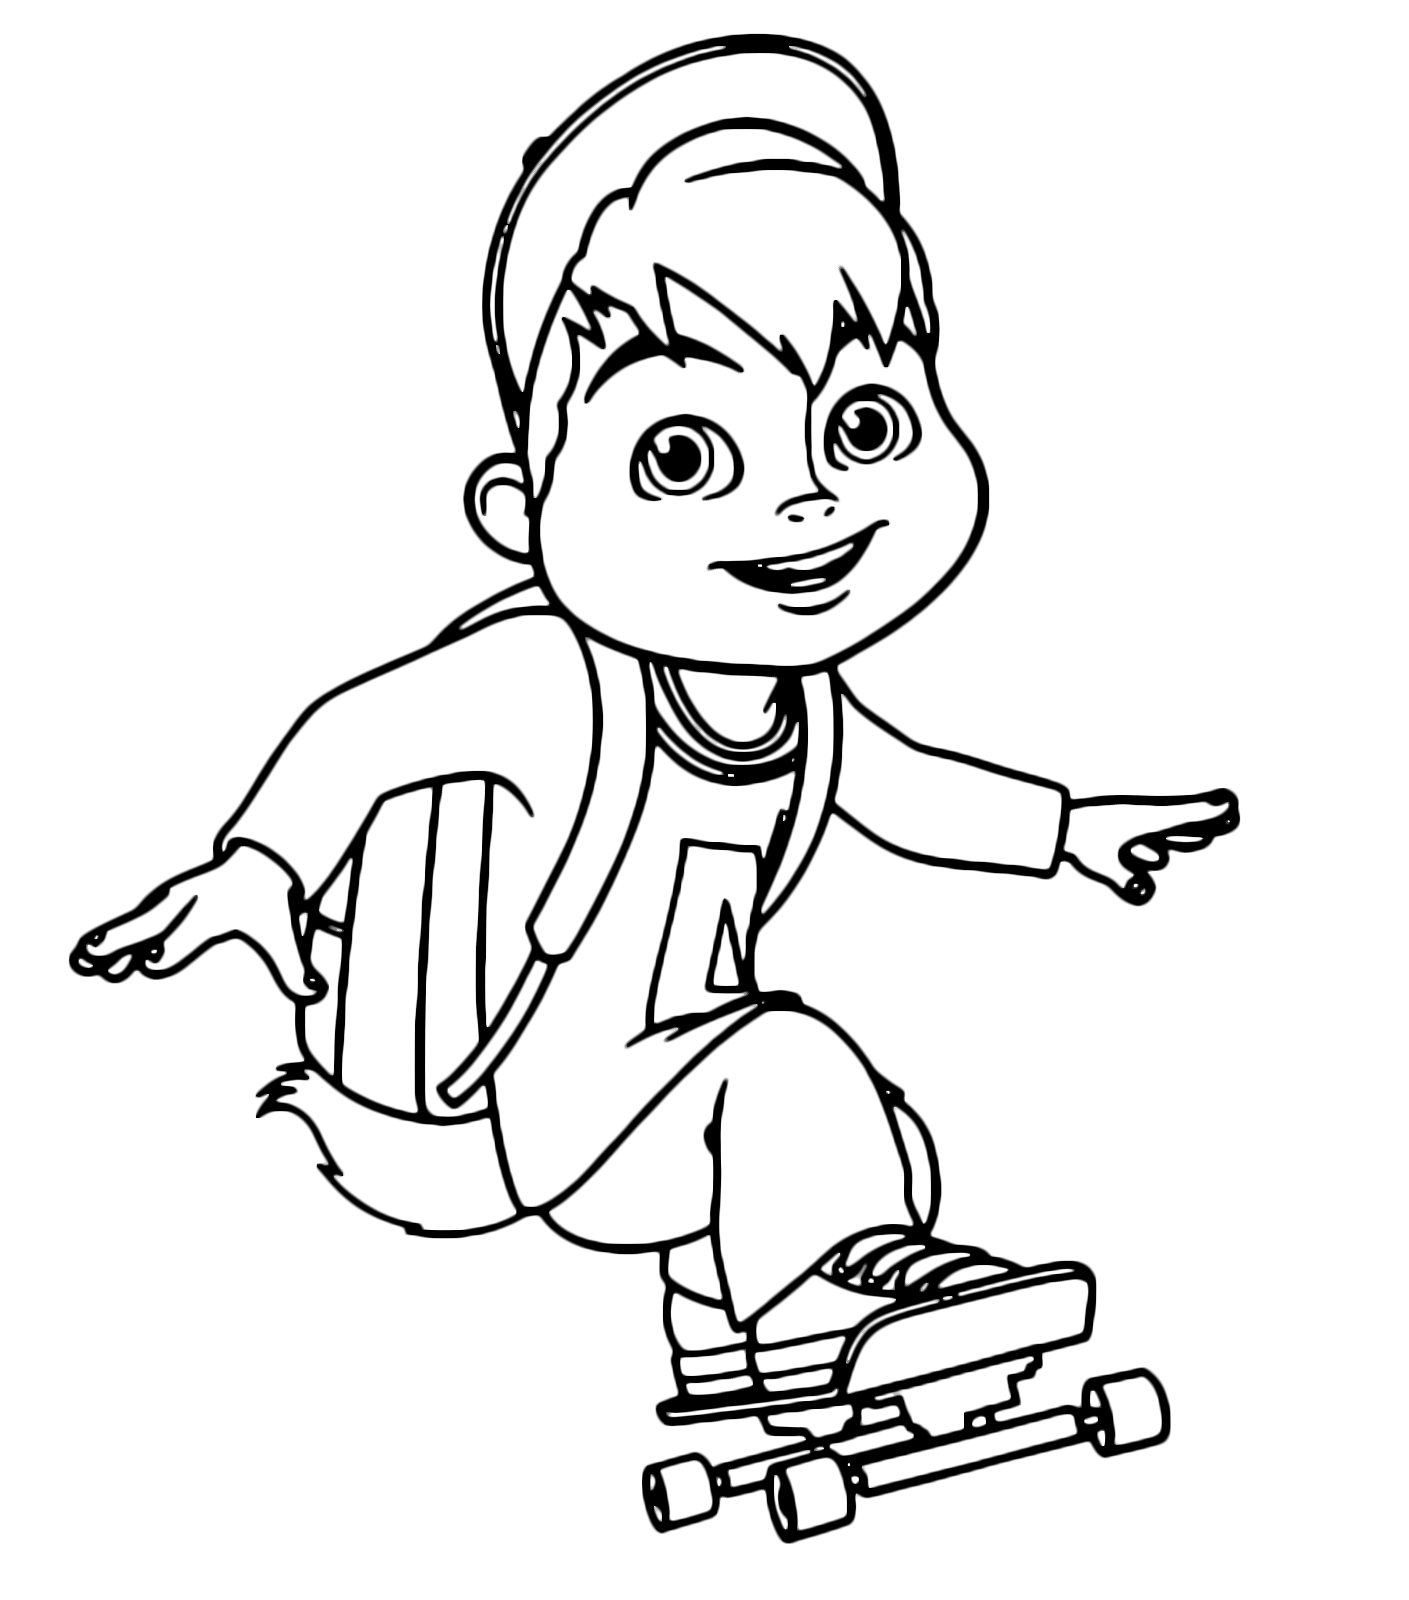 Alvin and the Chipmunks - Alvin sfreccia velocissimo sullo skateboard